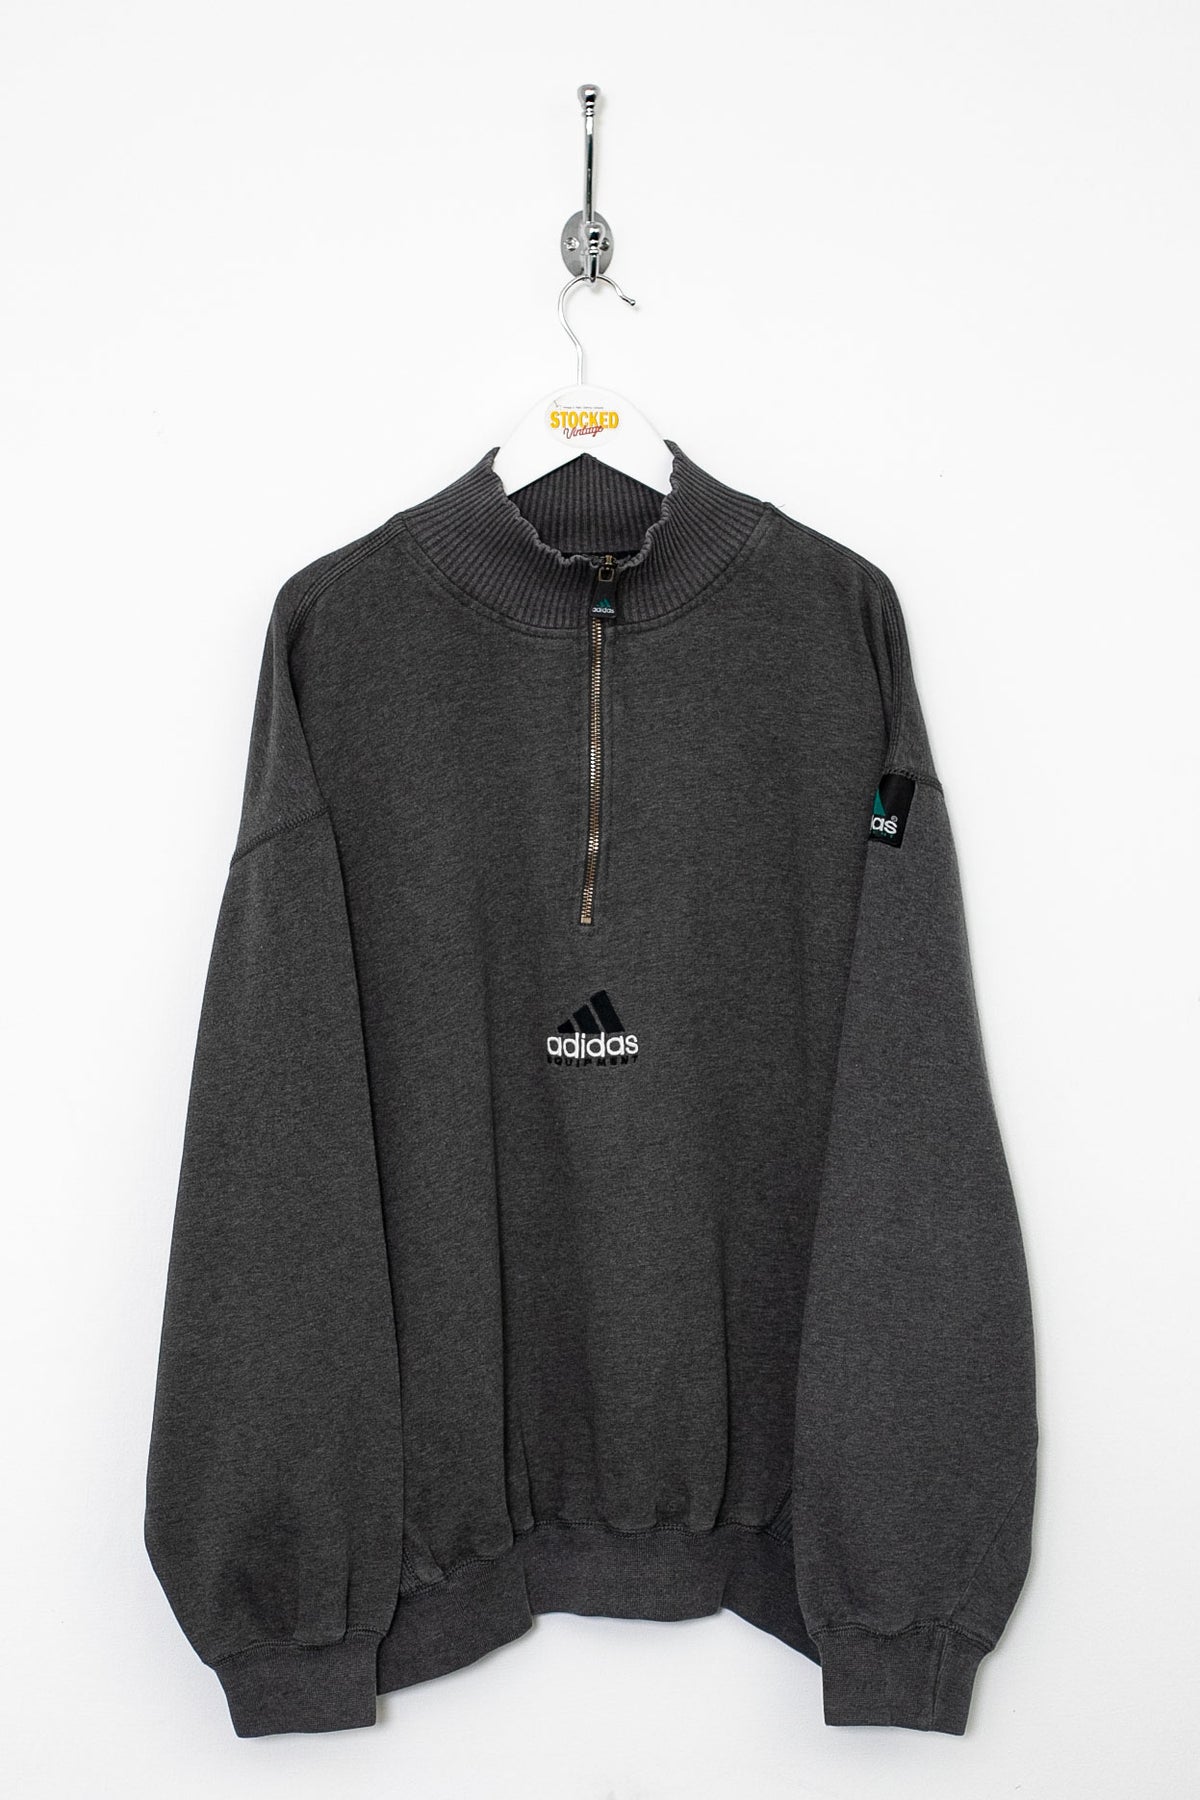 00s Adidas Equipment 1/4 Zip Sweatshirt (XL)